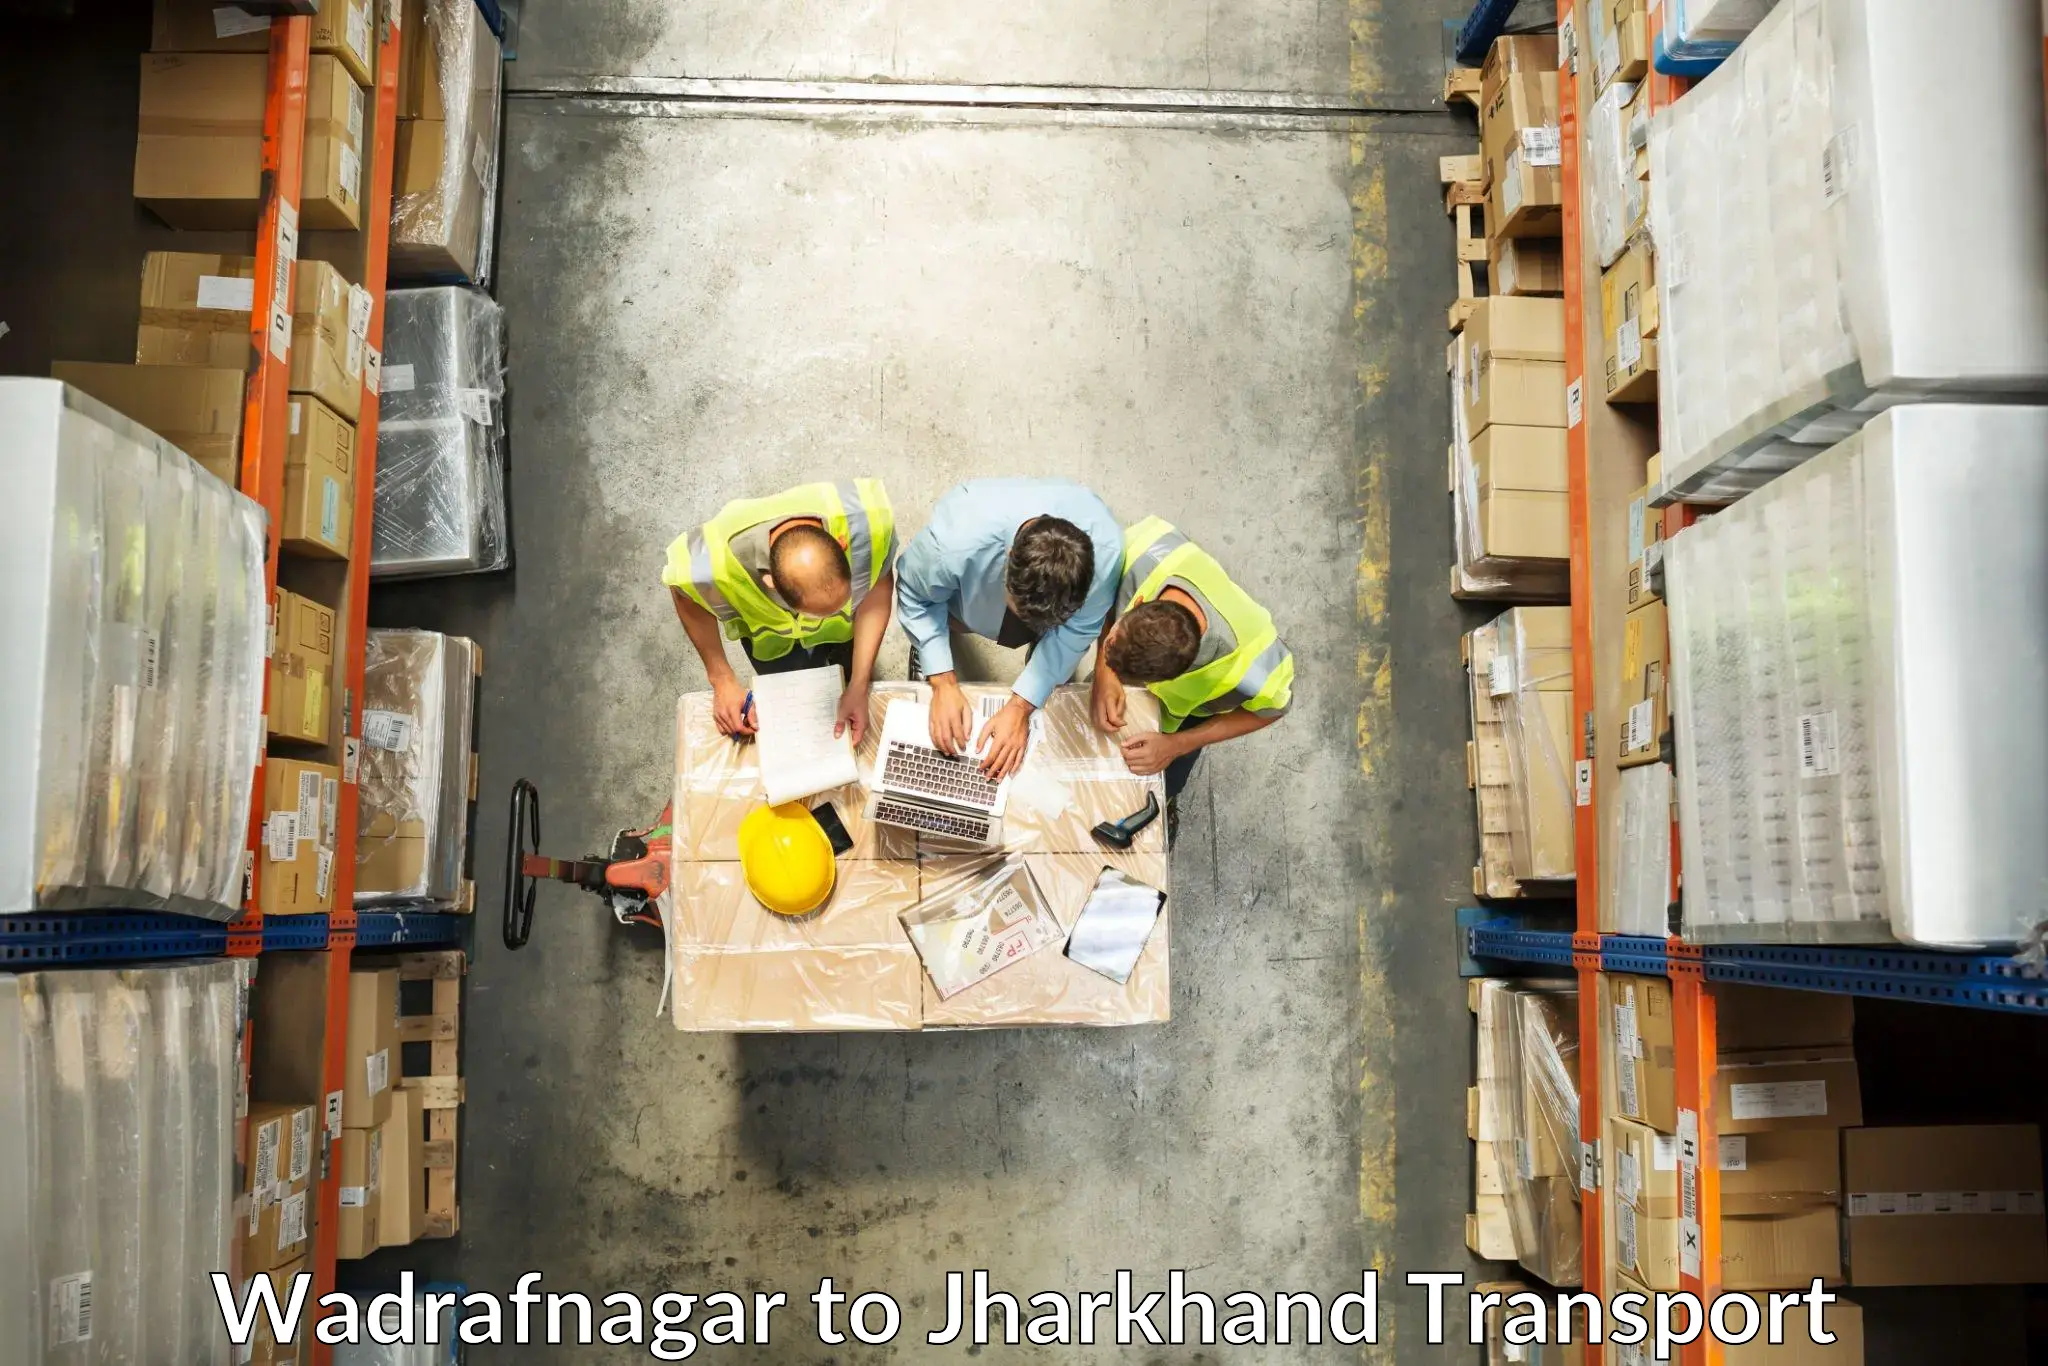 Cargo transportation services Wadrafnagar to Bagodar